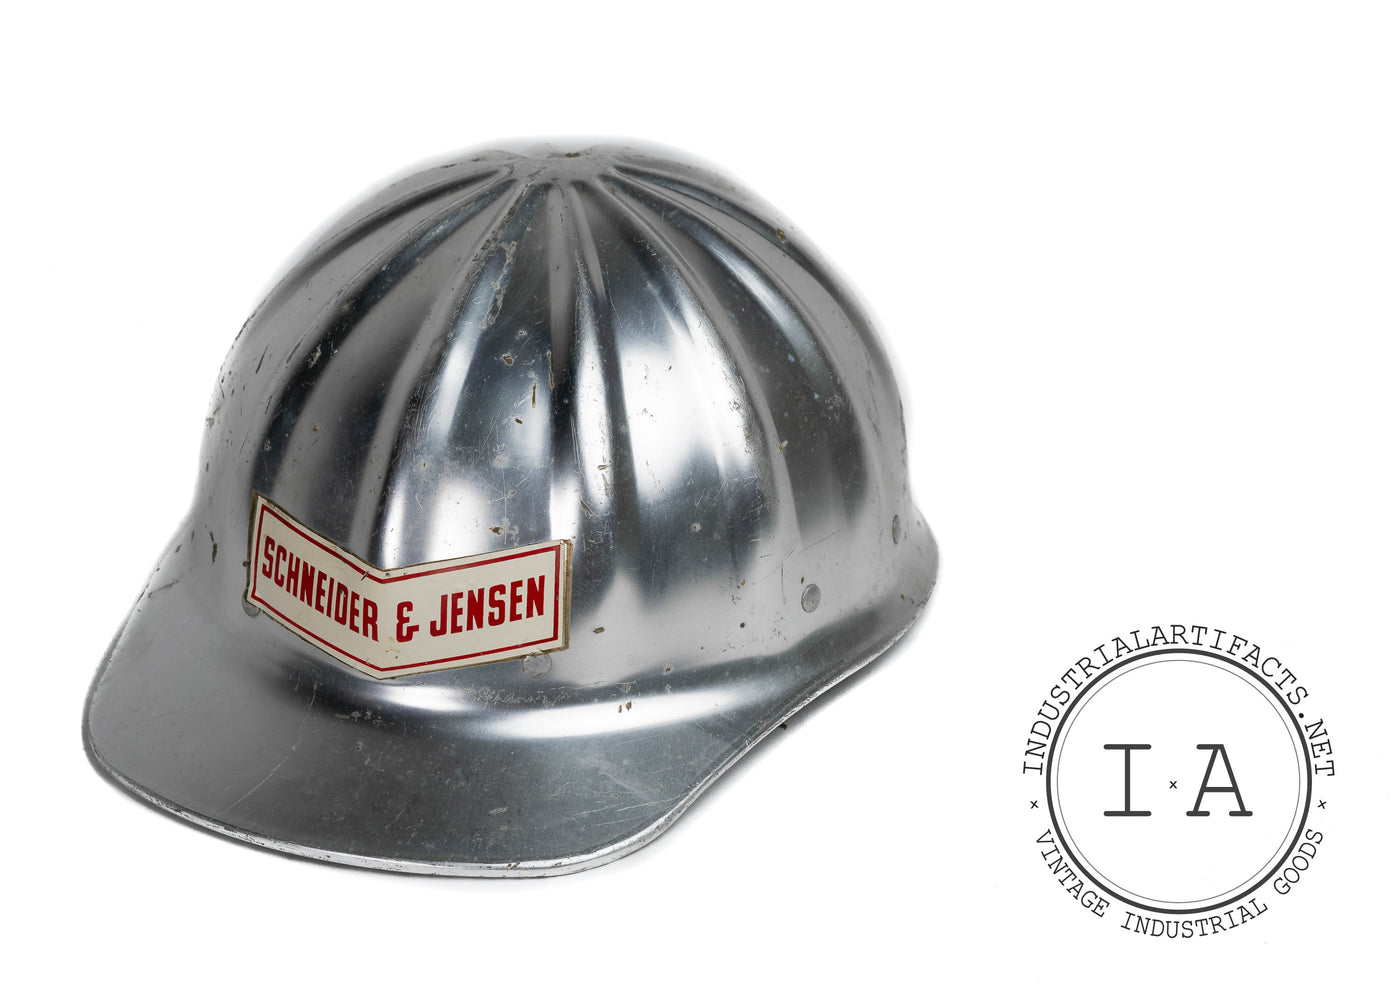 Vintage Industrial Hard Hat by Schneider & Jensen